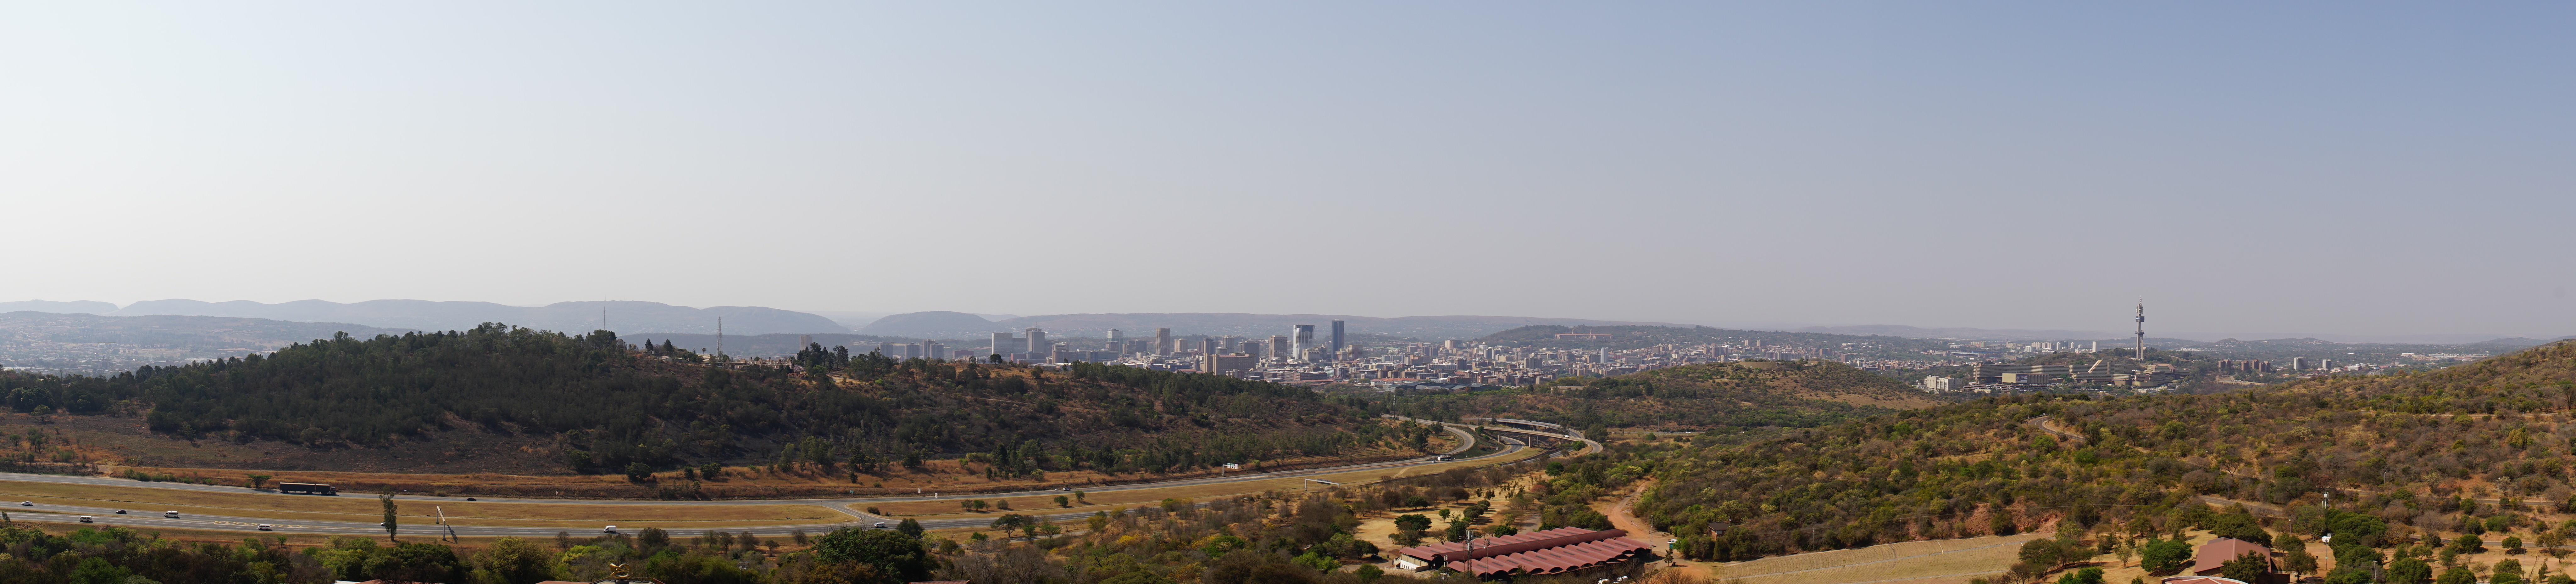 Panorama von Pretoria